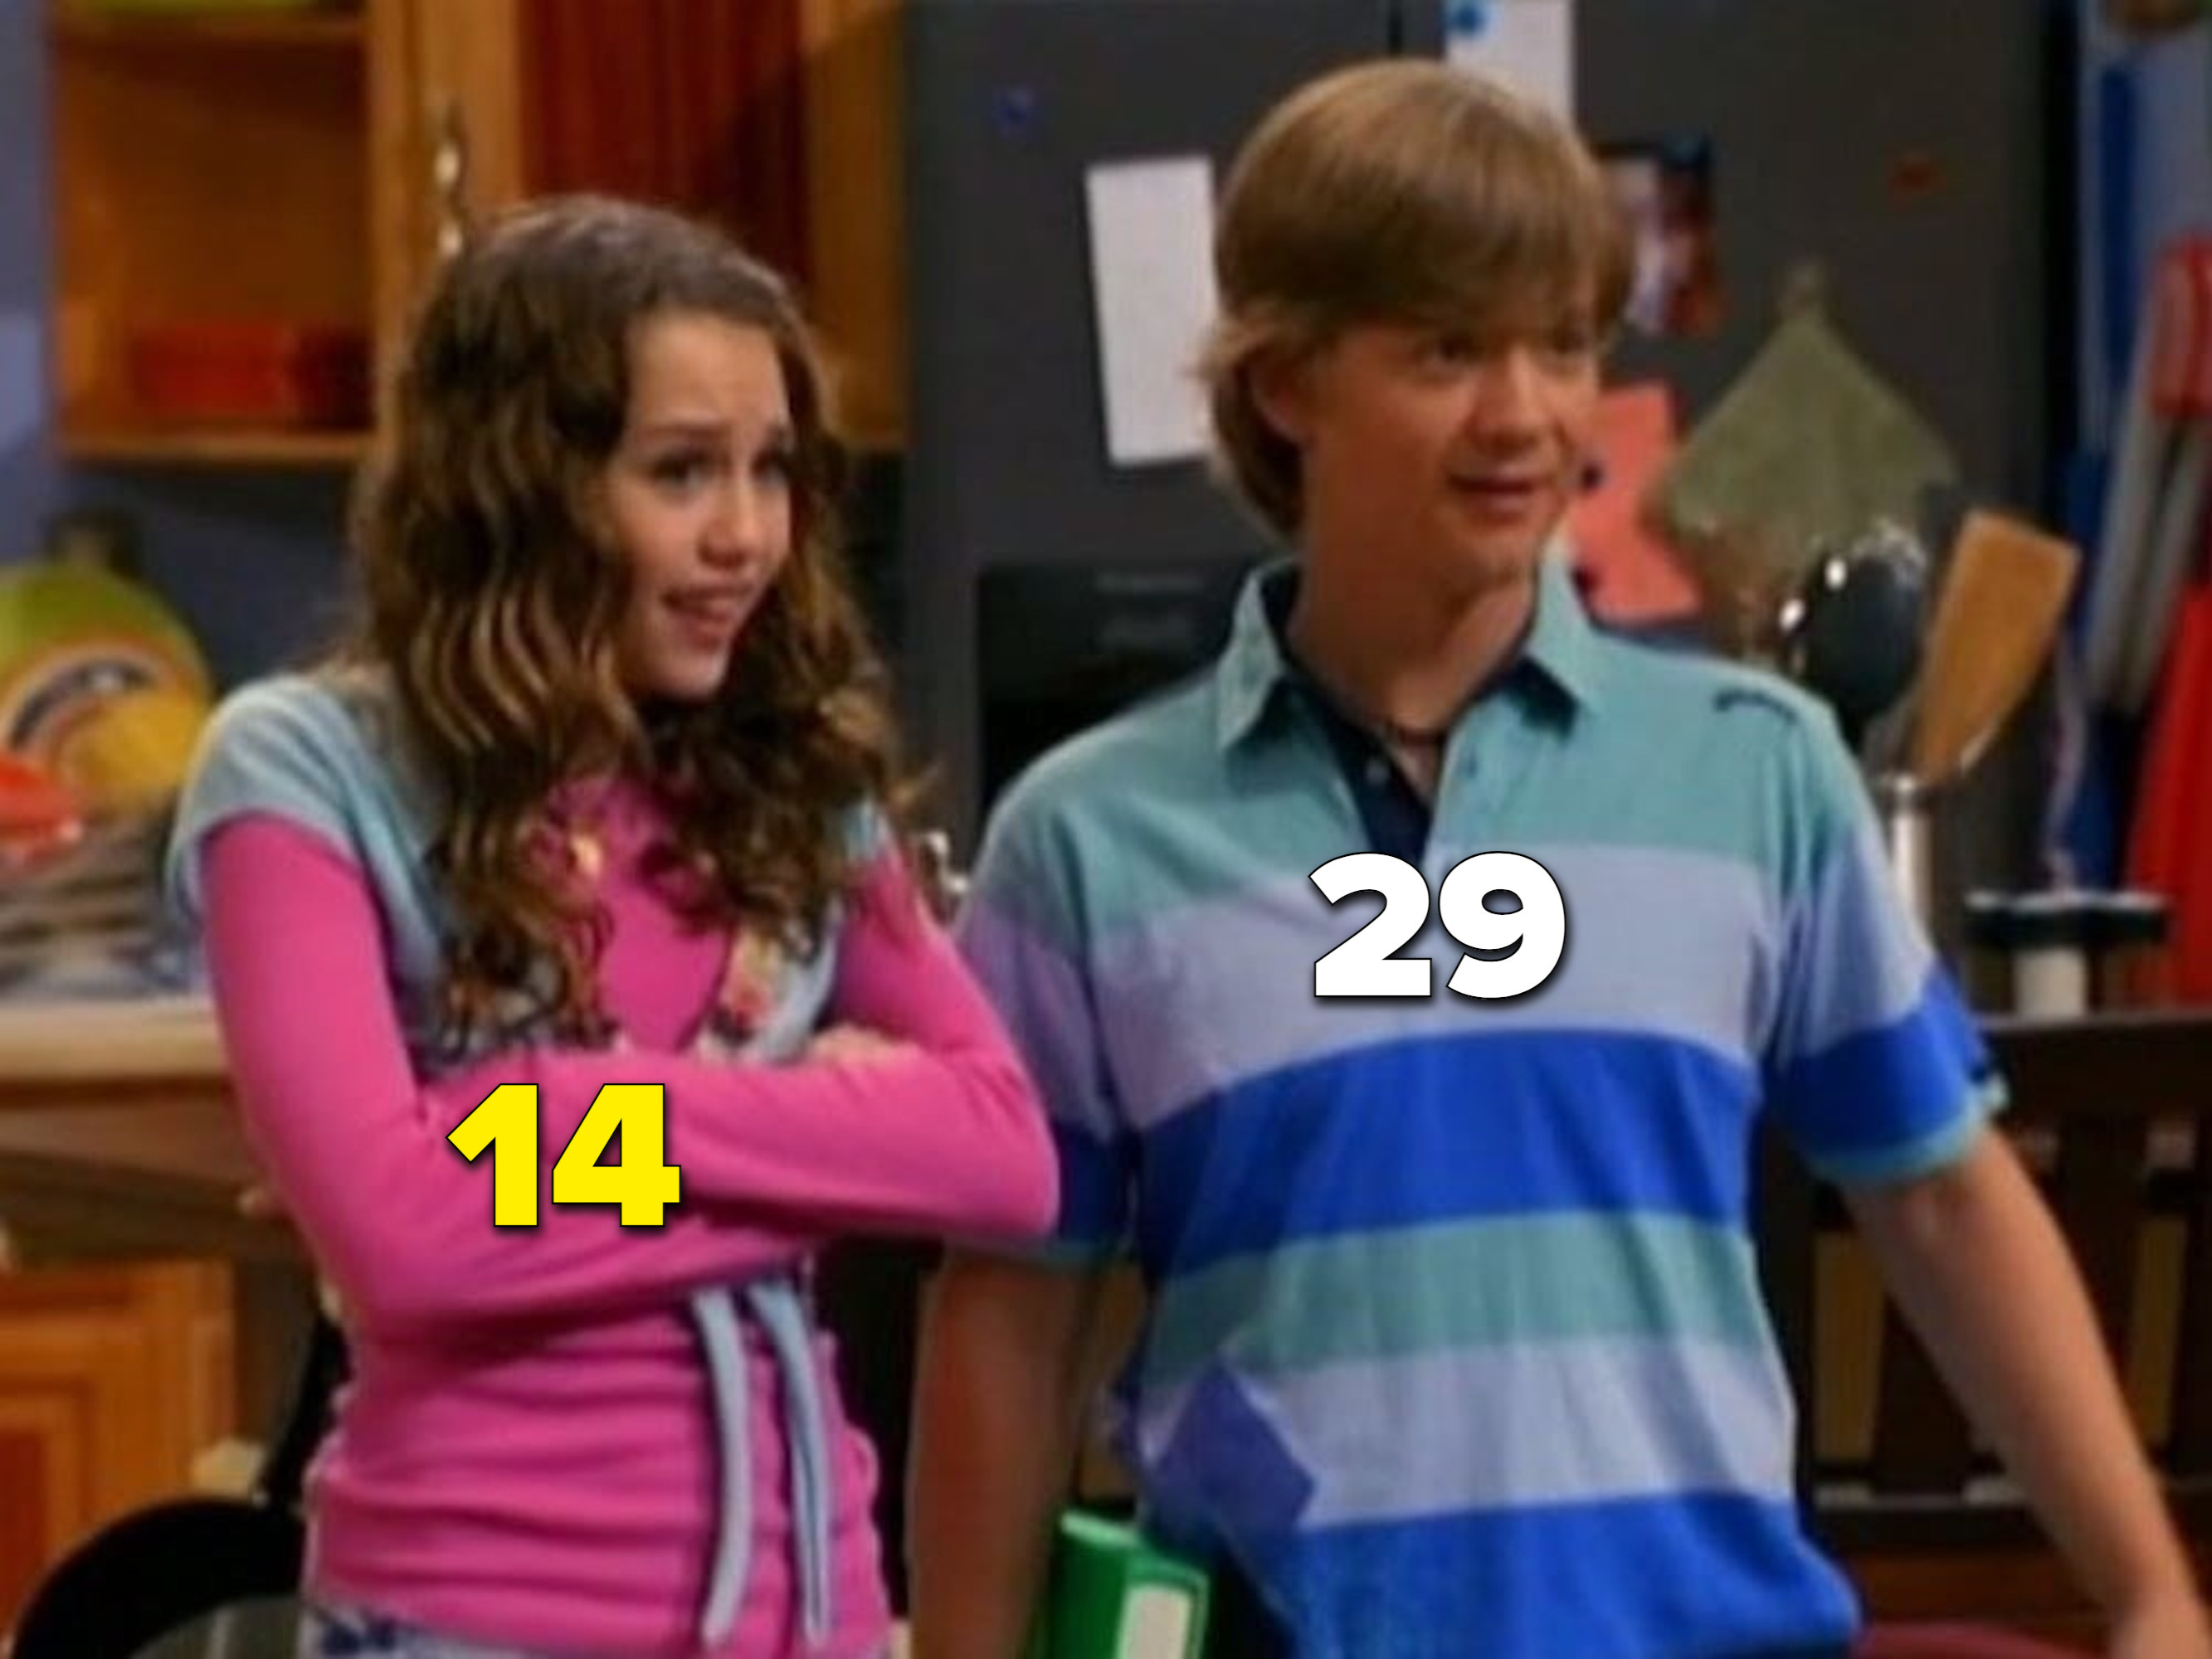 Miley Cyrus at 14 and Jason Earles at 29